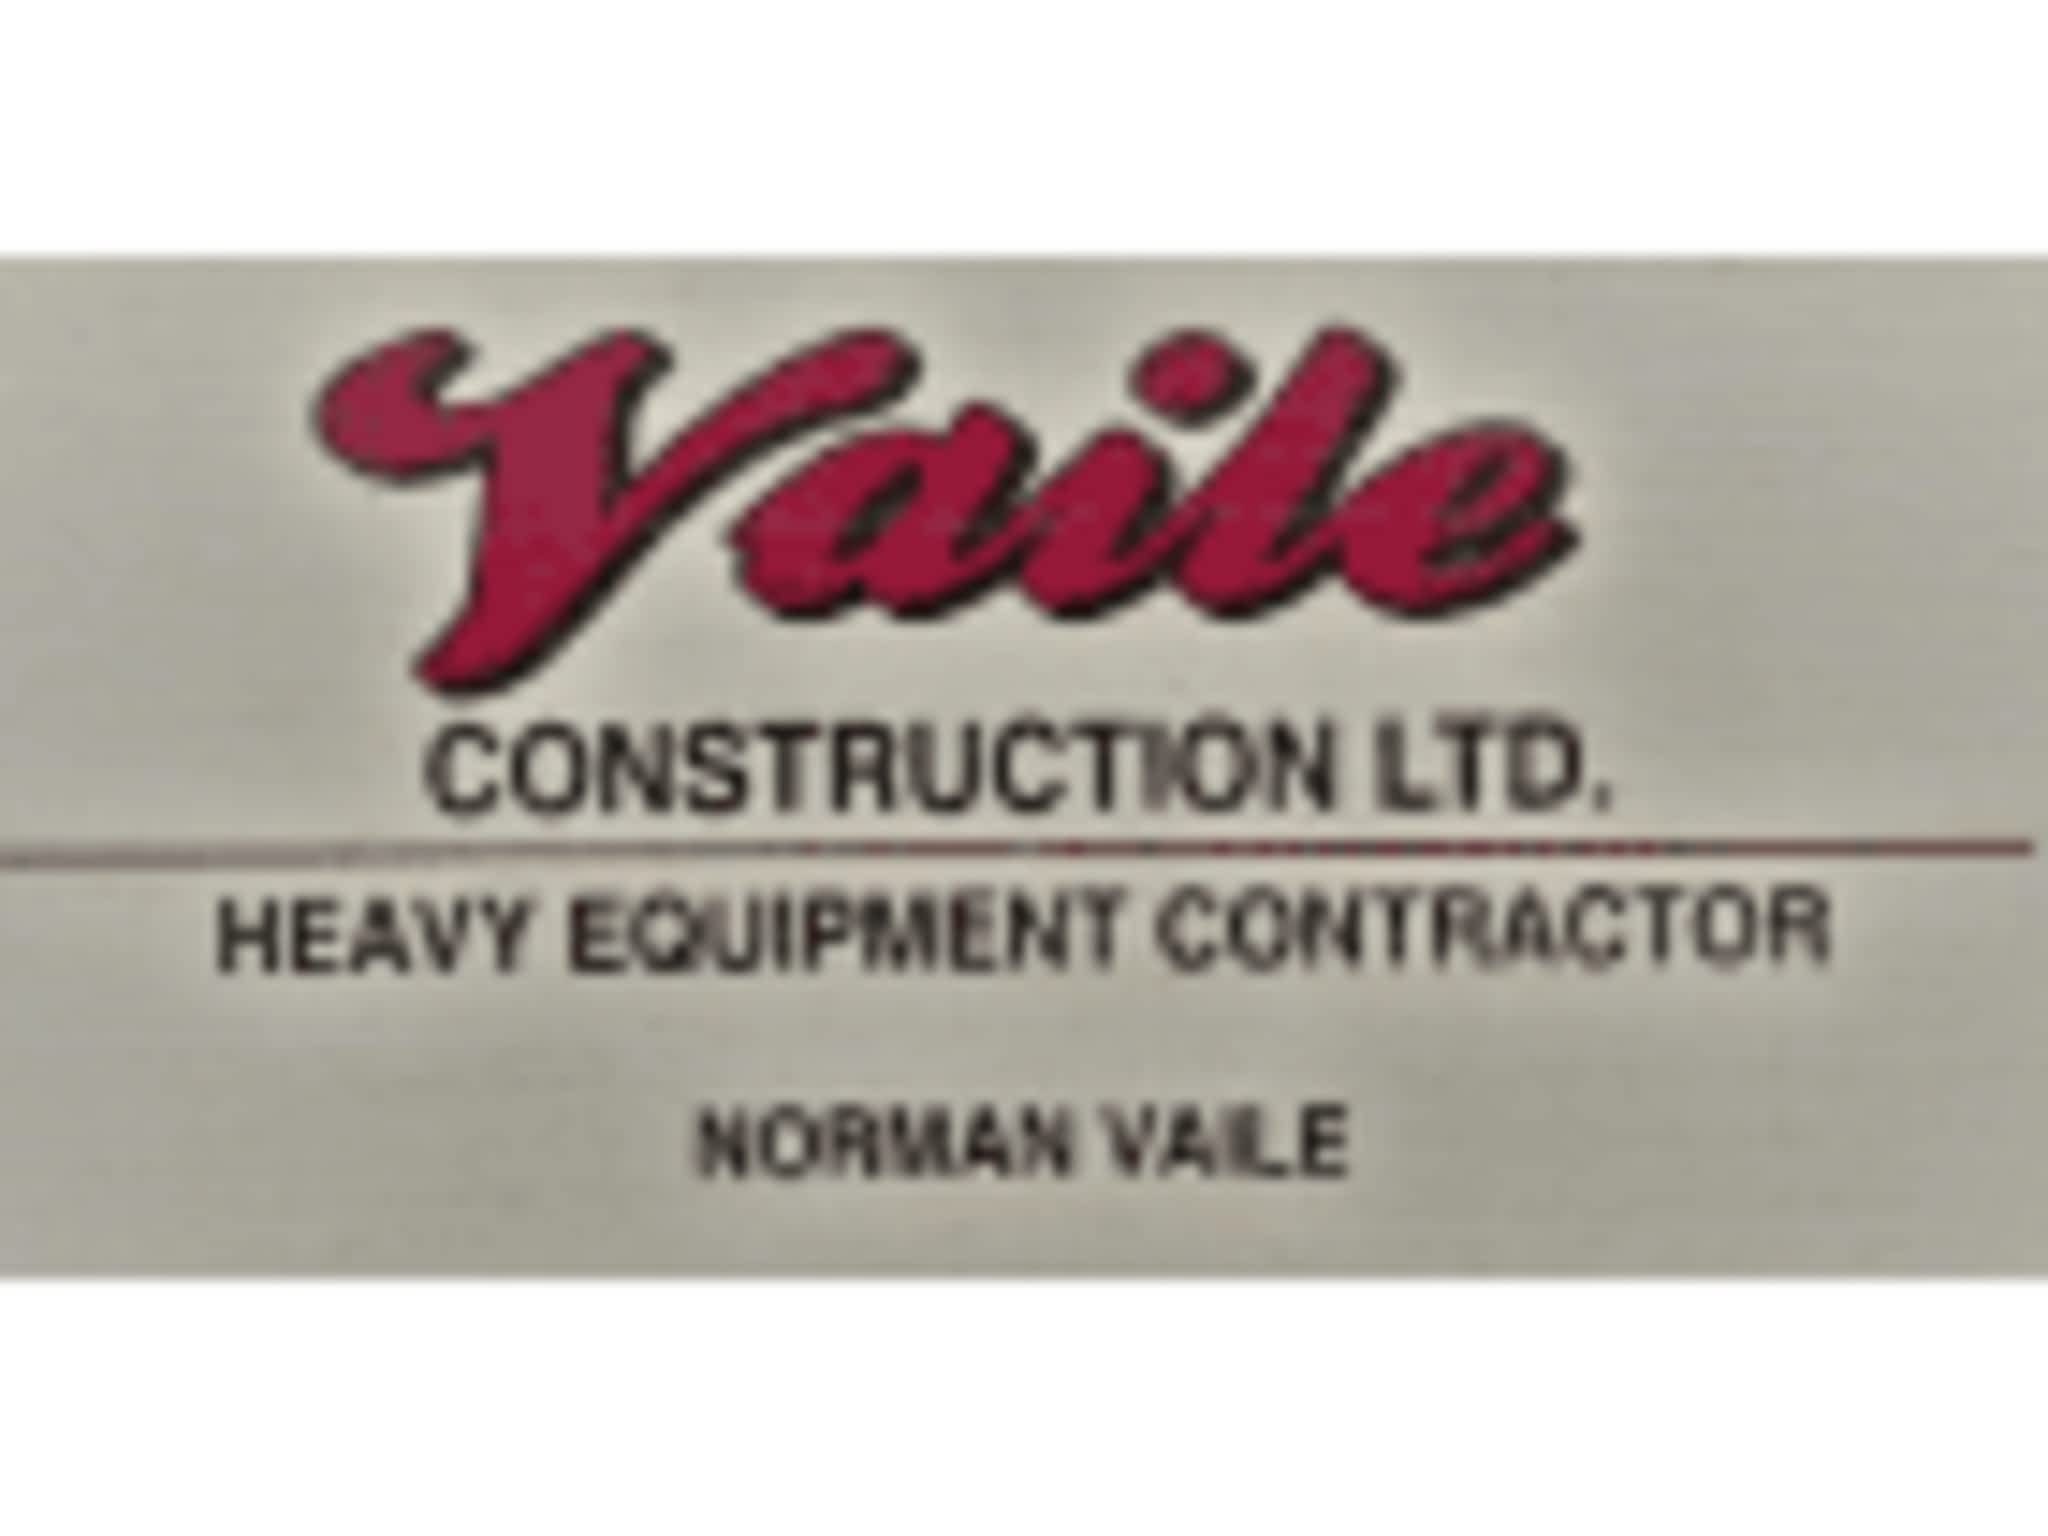 photo Vaile Construction Ltd